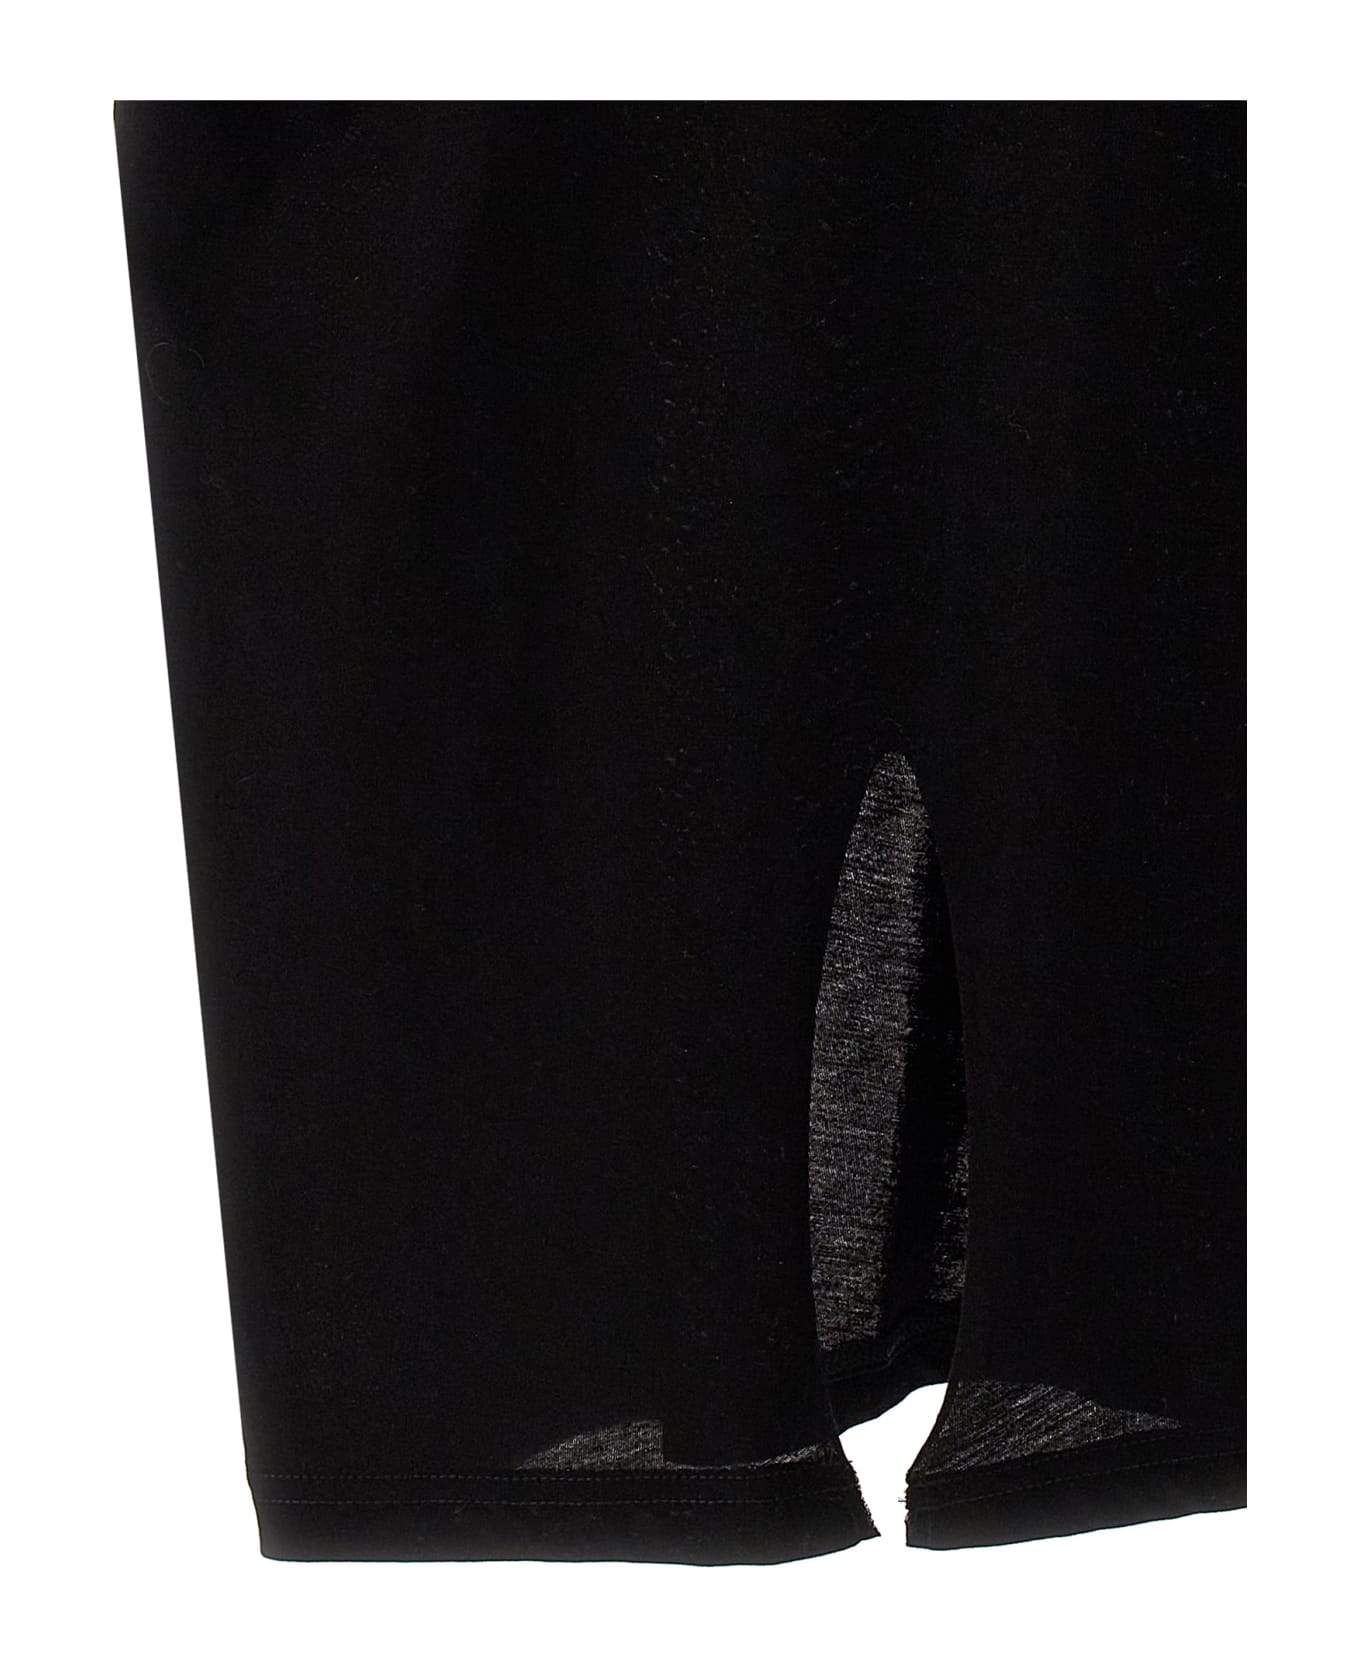 Yohji Yamamoto Unfinished Pocket T-shirt - Black  